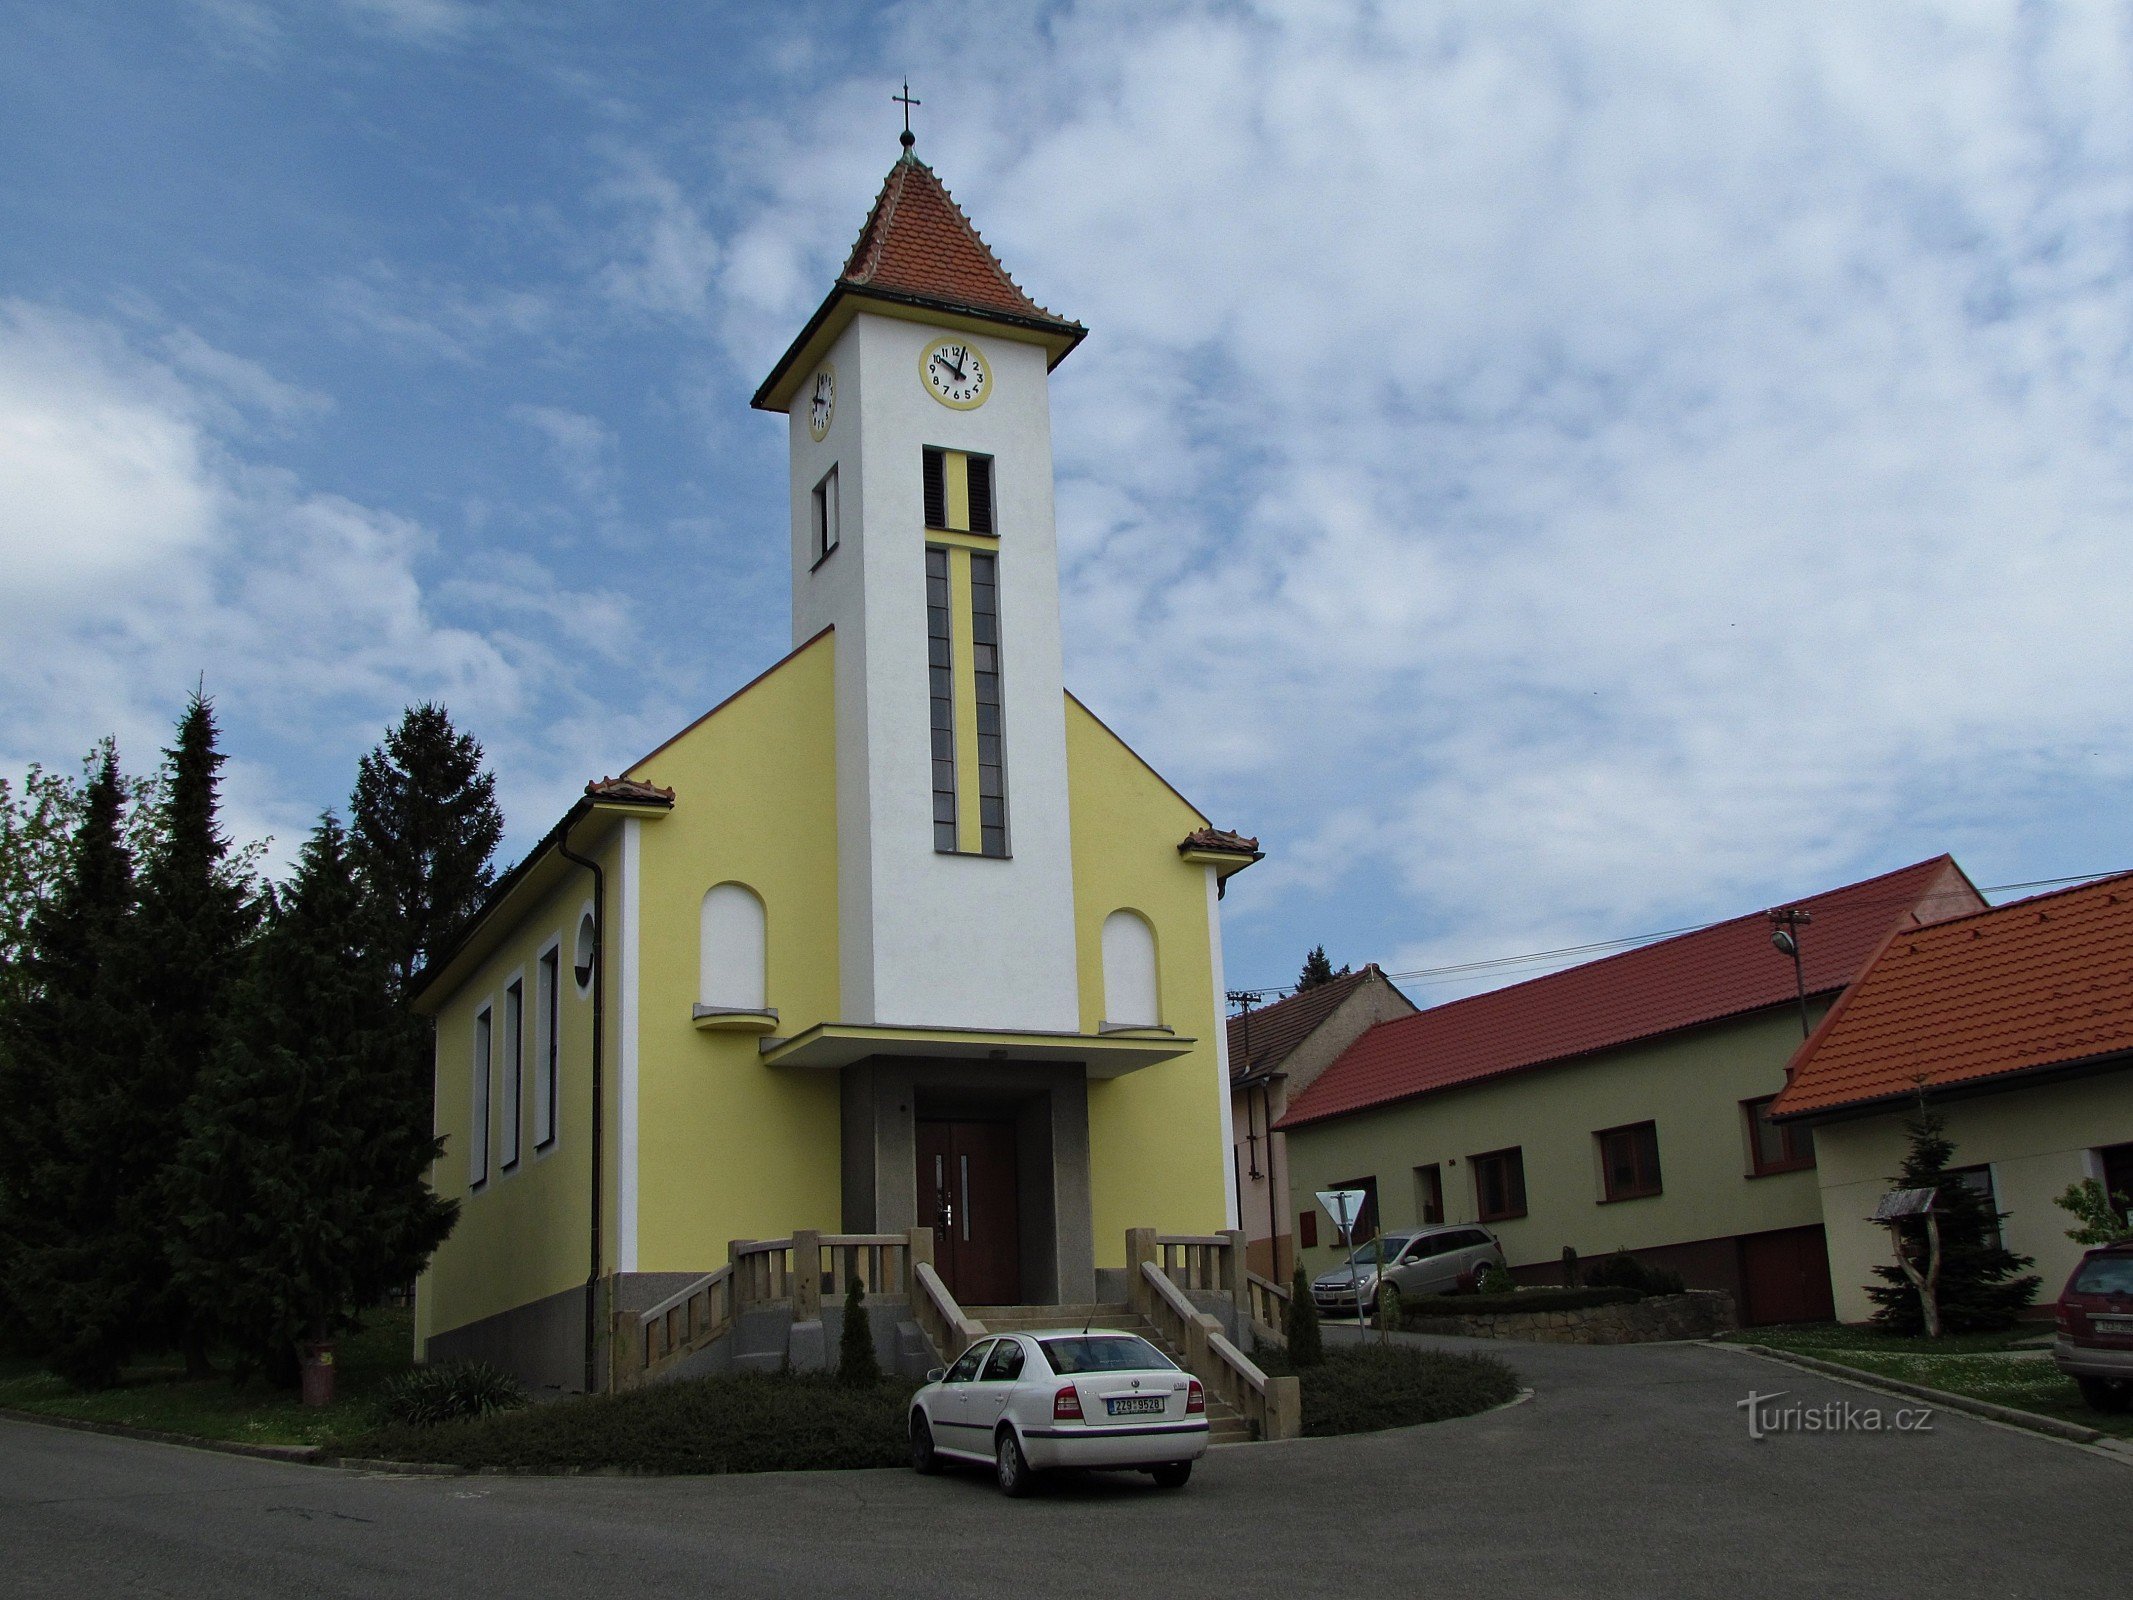 ズルタヴァ - 聖教会キリルとメトディウス